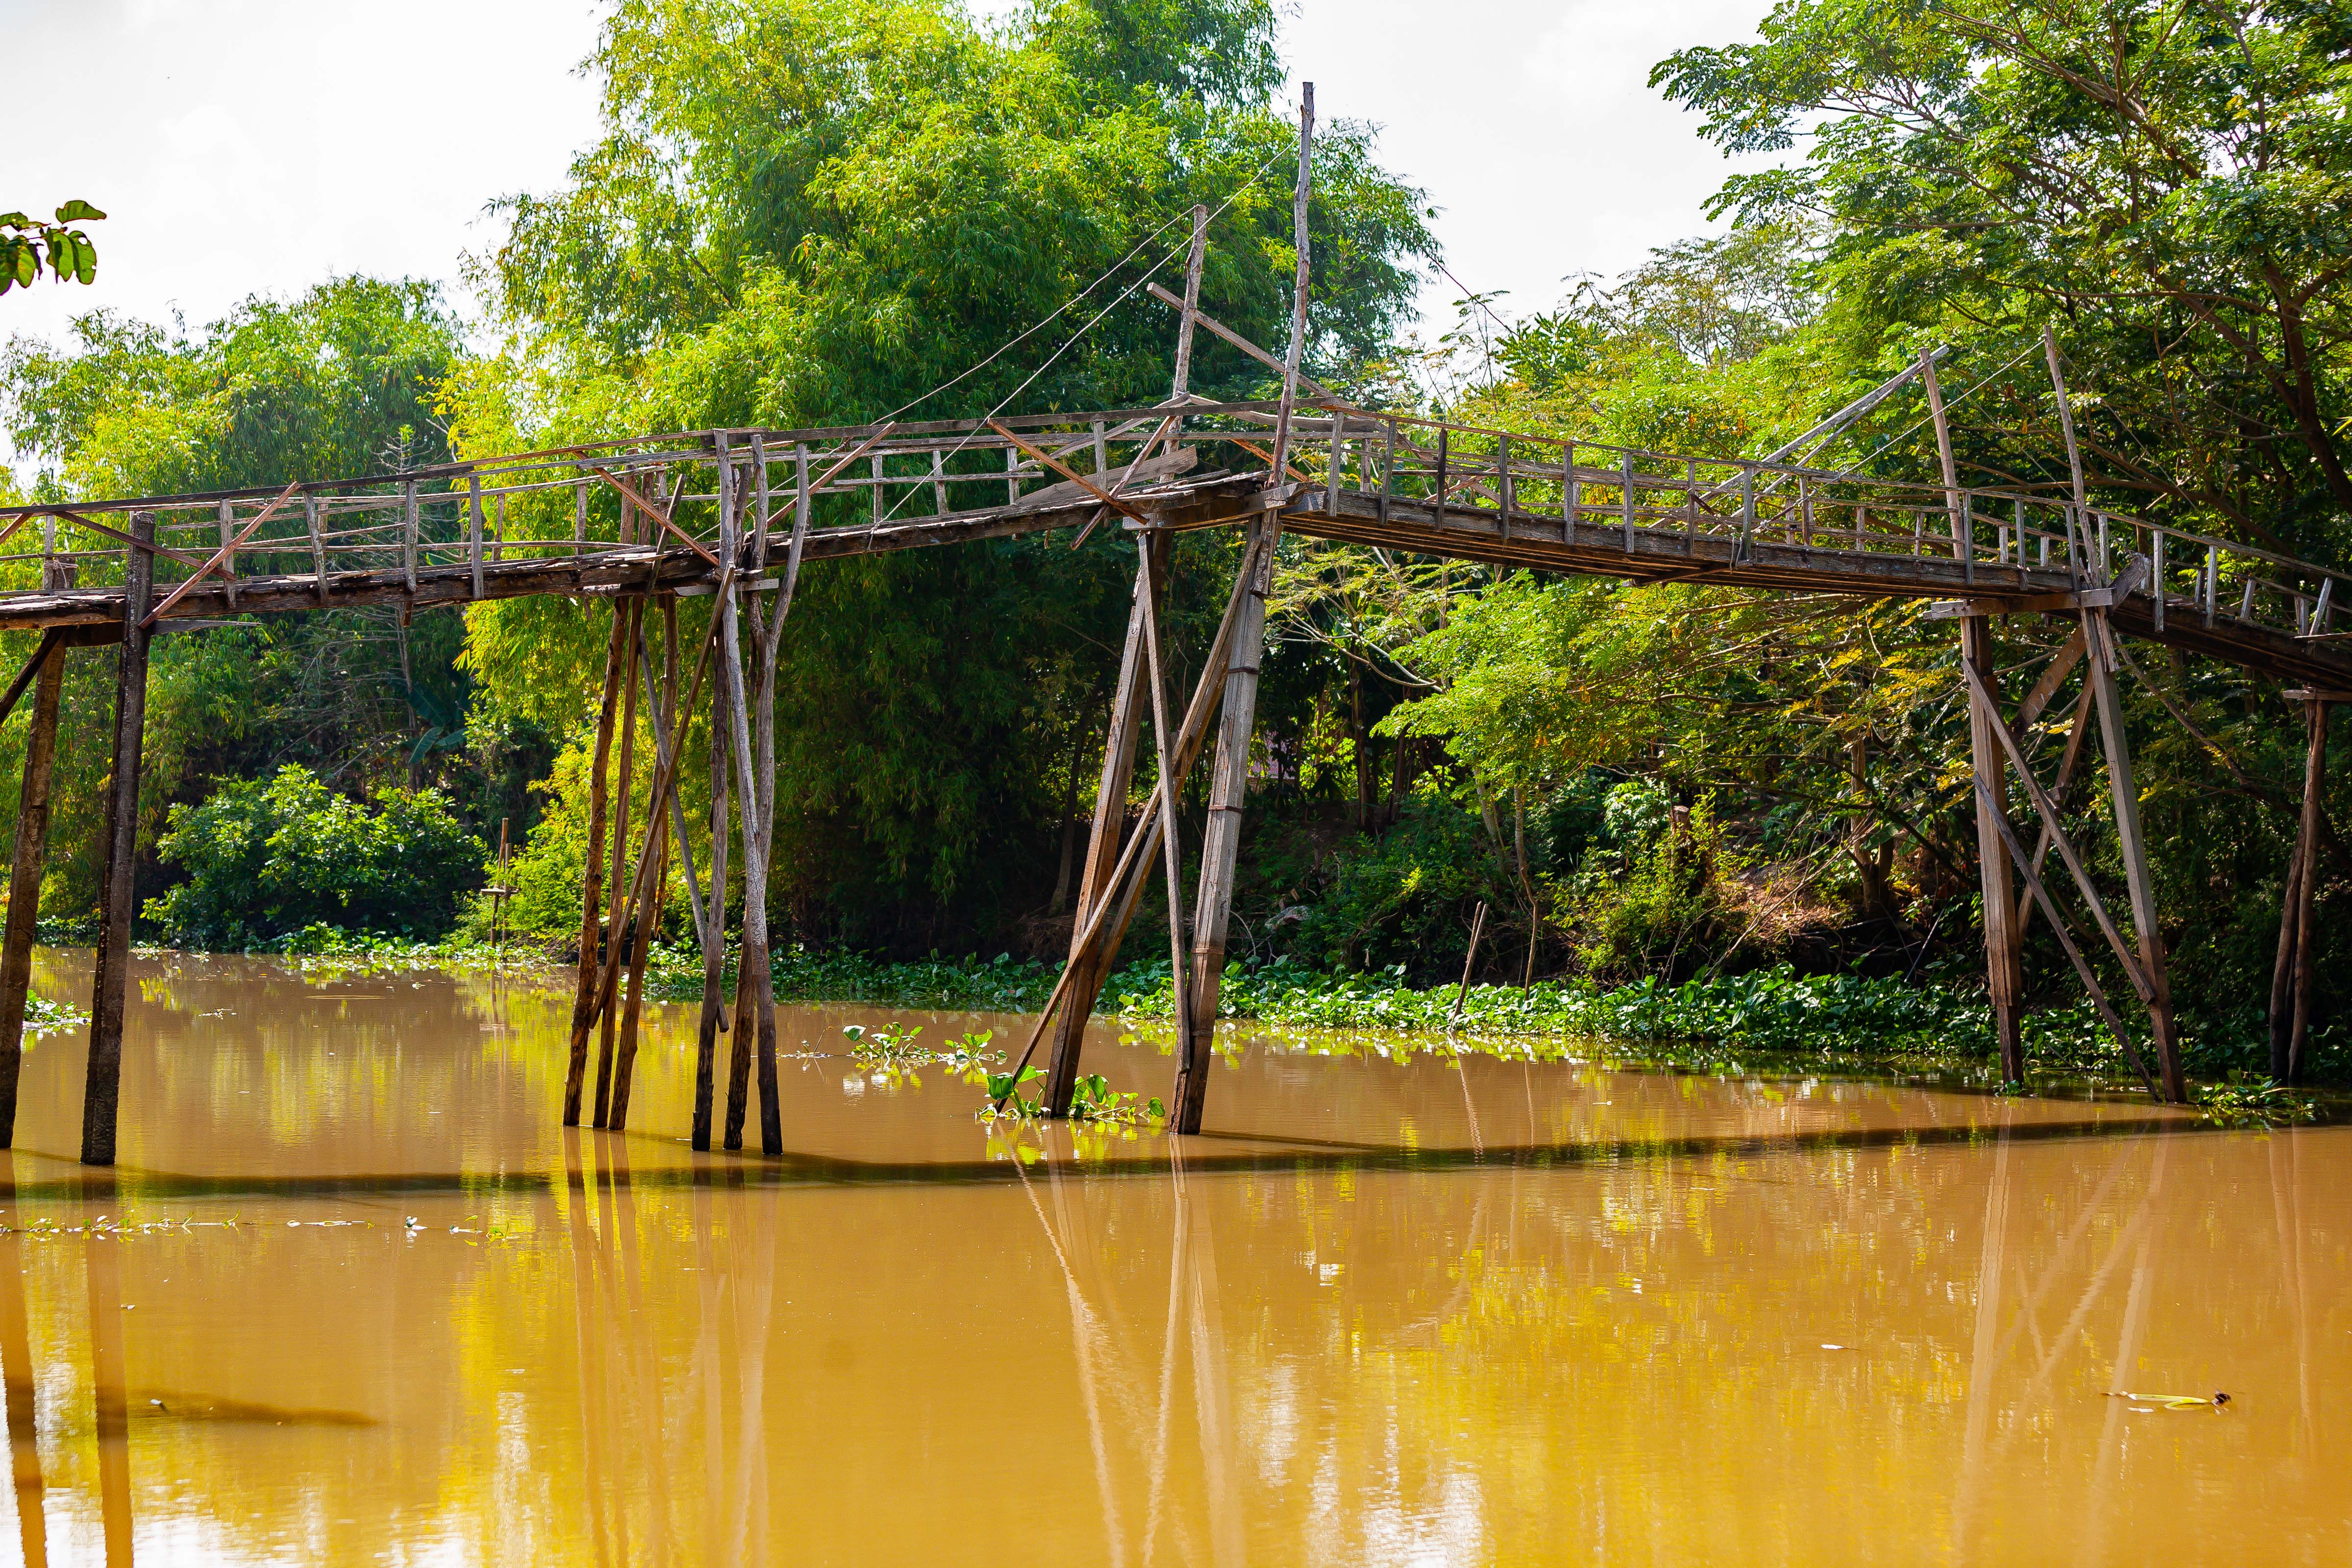 Vietnam, Dong Thap Prov, Rickety Foot Bridge, 2010, IMG 1952